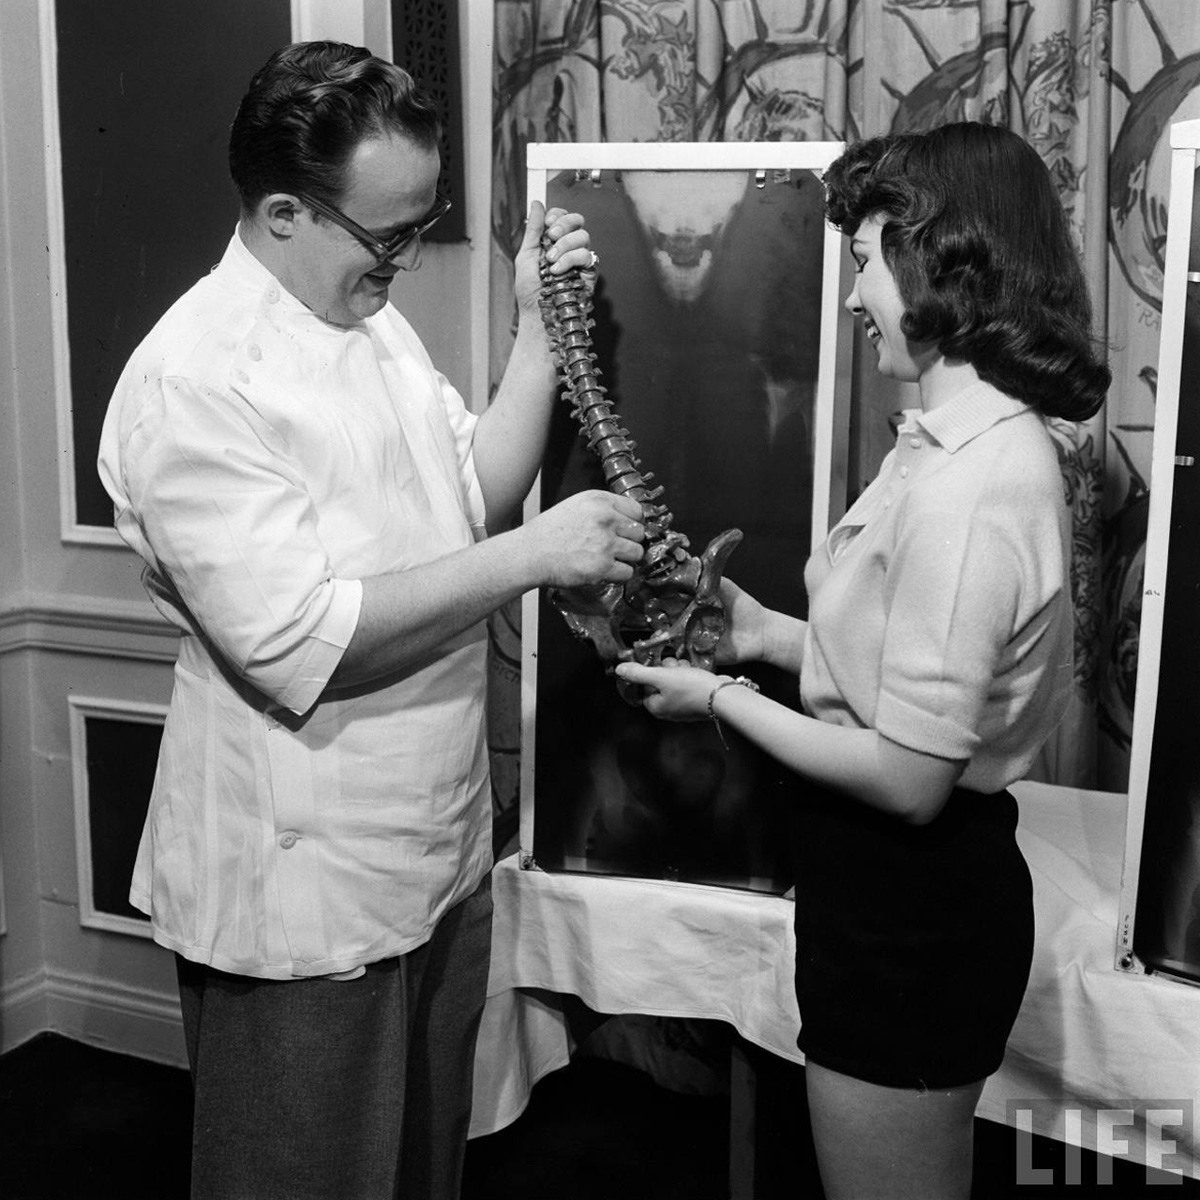 المتسابقة (لويس كونواي) وهي تقف بجانب صورة سينية لعمودها الفقري بينما يقوم ممارس لعلاج تقويم العظام بحمل مجسم للعمود الفقري البشري ليقارنه بالصورة، التقطت في مايو 1946 - صورة: Wallace Kirkland/LIFE